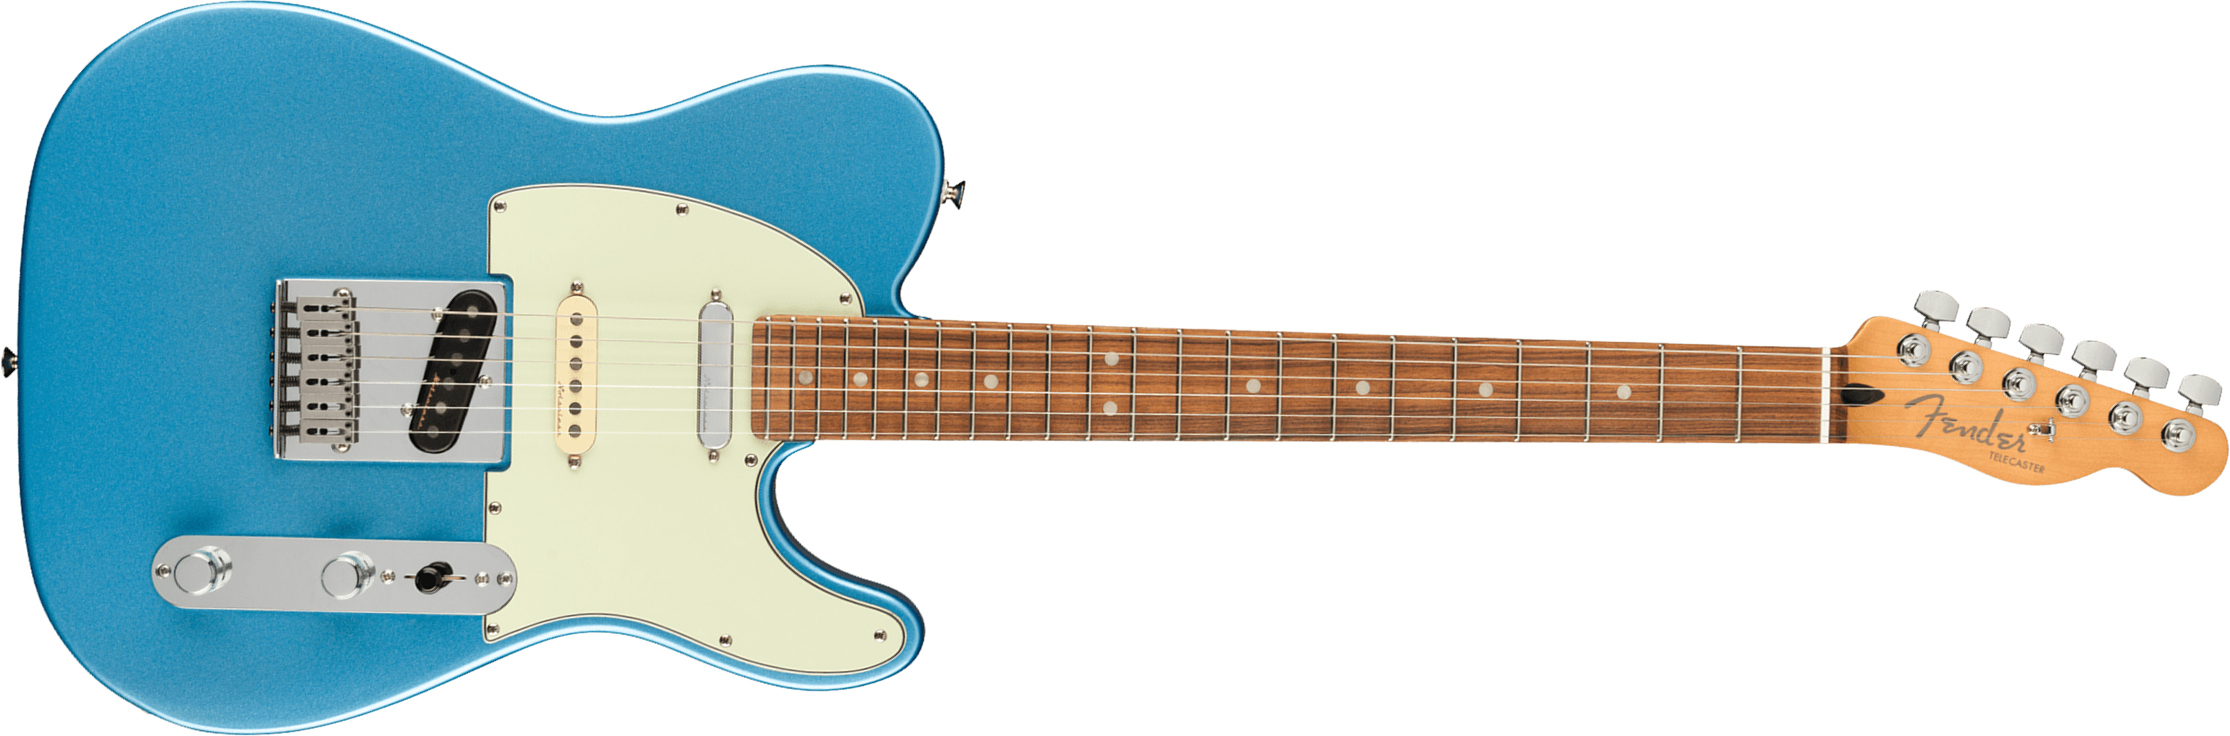 Fender Tele Player Plus Nashville Mex 3s Ht Pf - Opal Spark - Guitarra eléctrica con forma de tel - Main picture